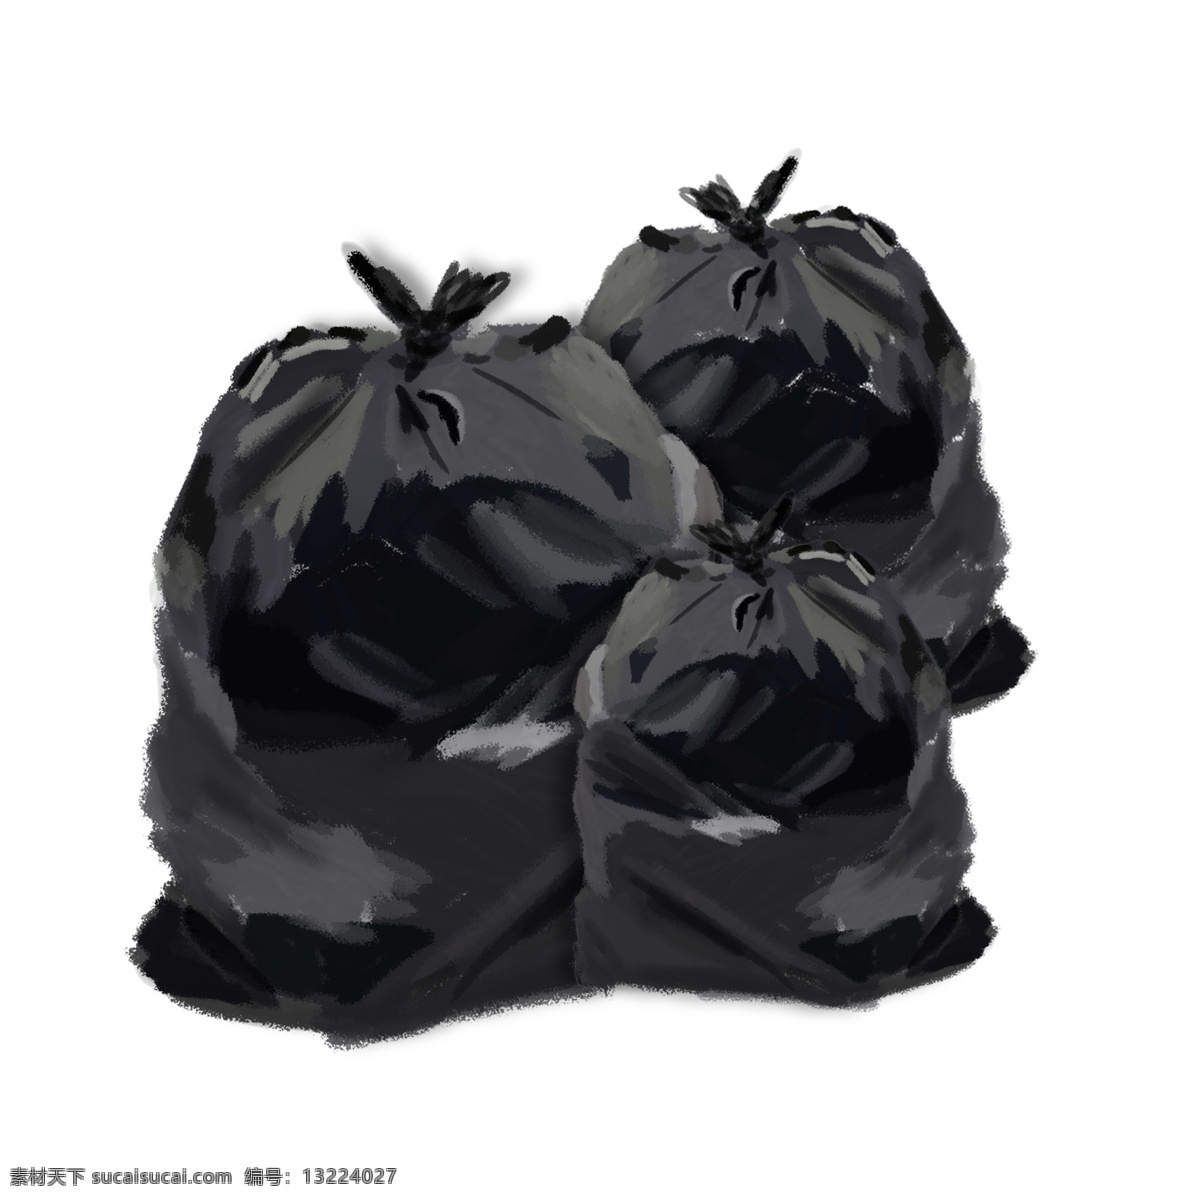 黑色 环保 塑料 垃圾袋 黑色垃圾袋 装满的垃圾 环保垃圾袋 垃圾 一堆垃圾 垃圾堆满了 装满 袋子